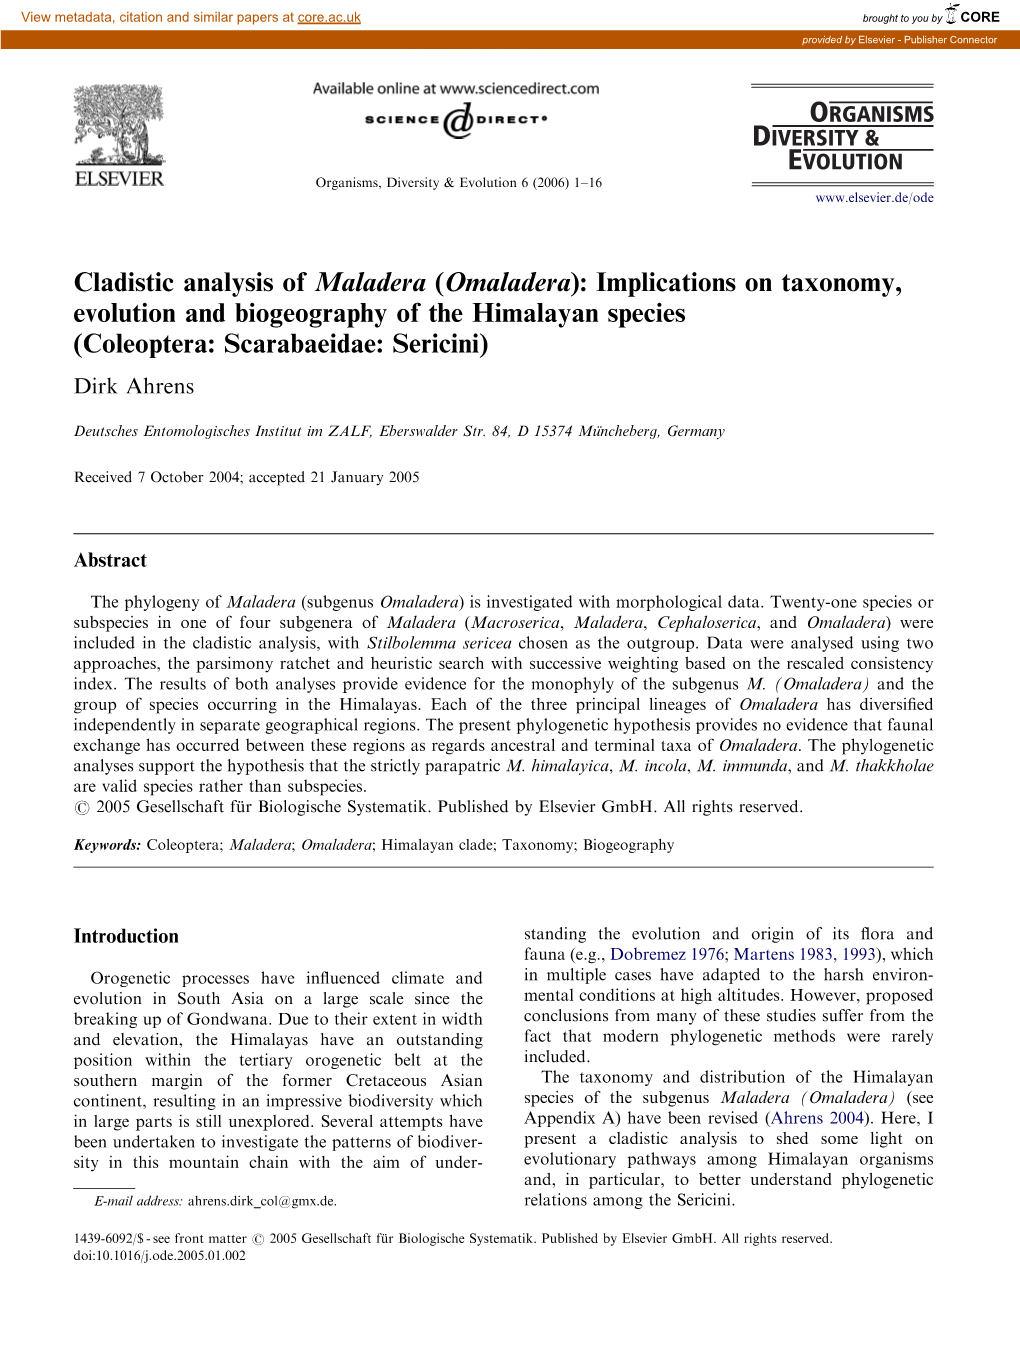 Cladistic Analysis of Maladera (Omaladera)